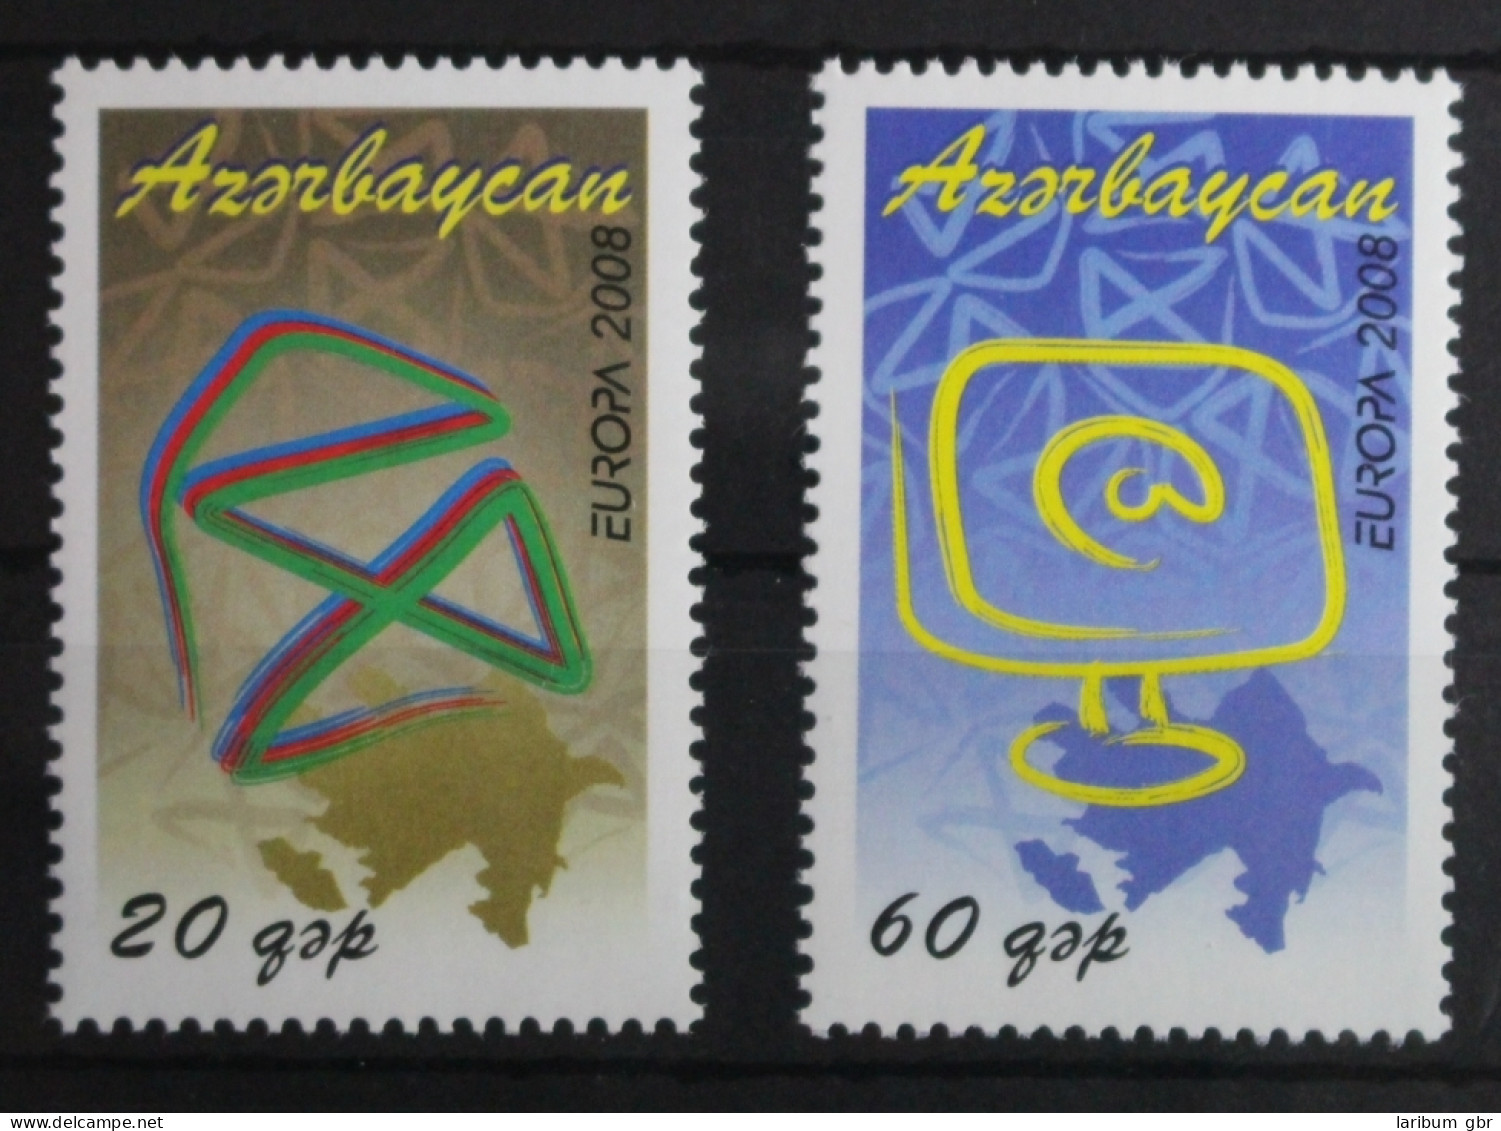 Aserbaidschan 715-716 Postfrisch Europa Der Brief #VQ895 - Azerbaïjan